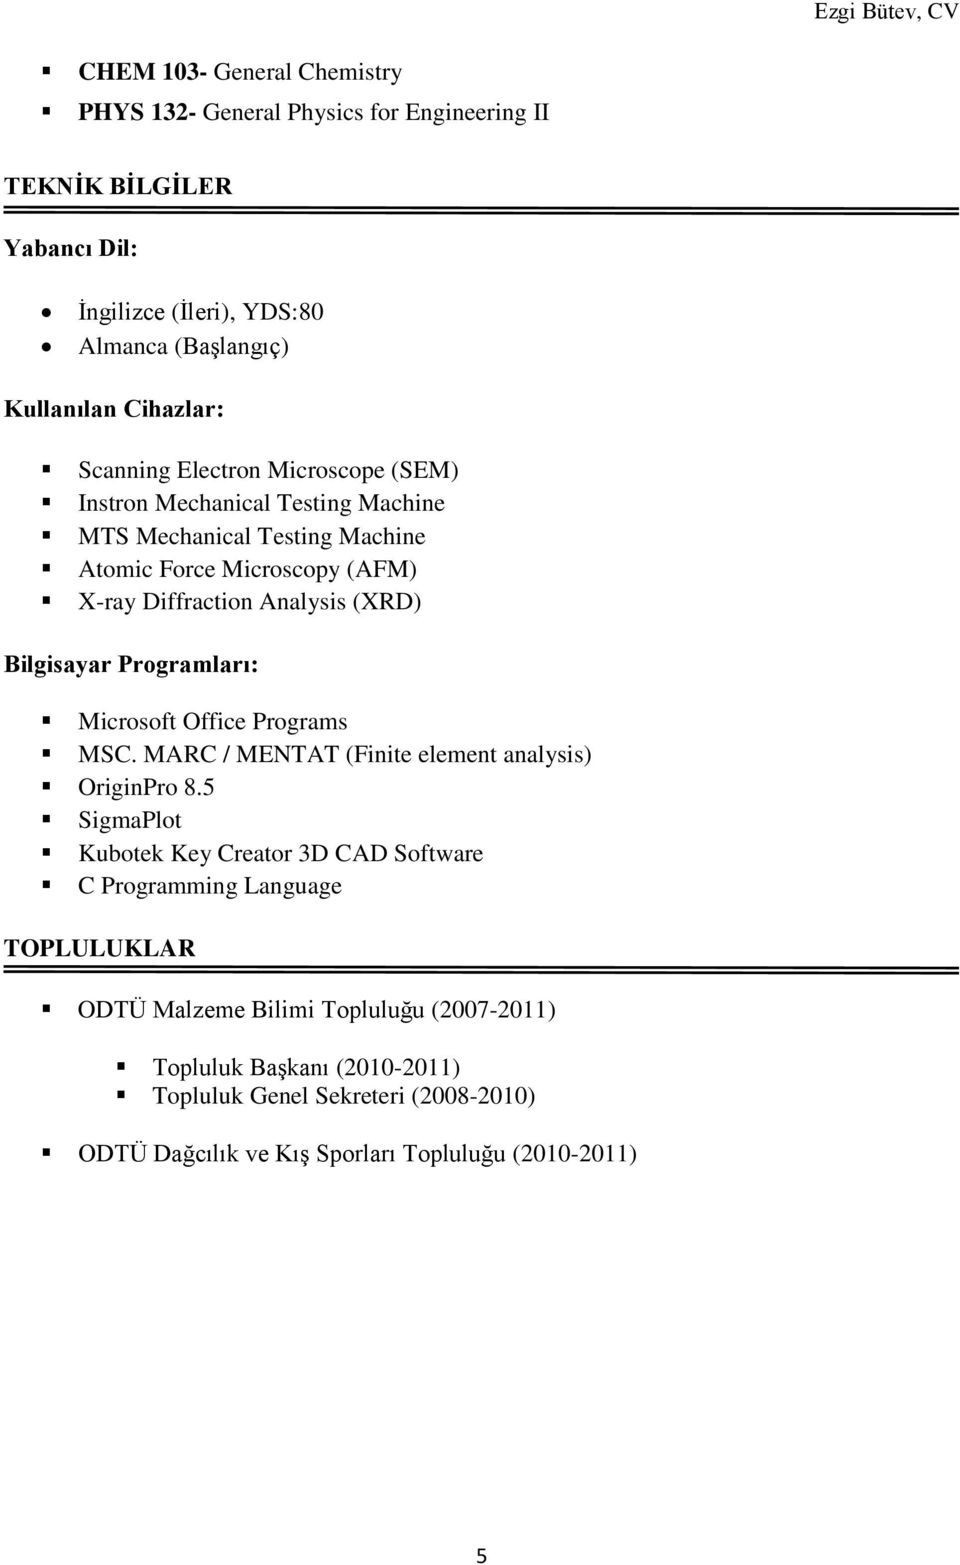 Bilgisayar Programları: Microsoft Office Programs MSC. MARC / MENTAT (Finite element analysis) OriginPro 8.